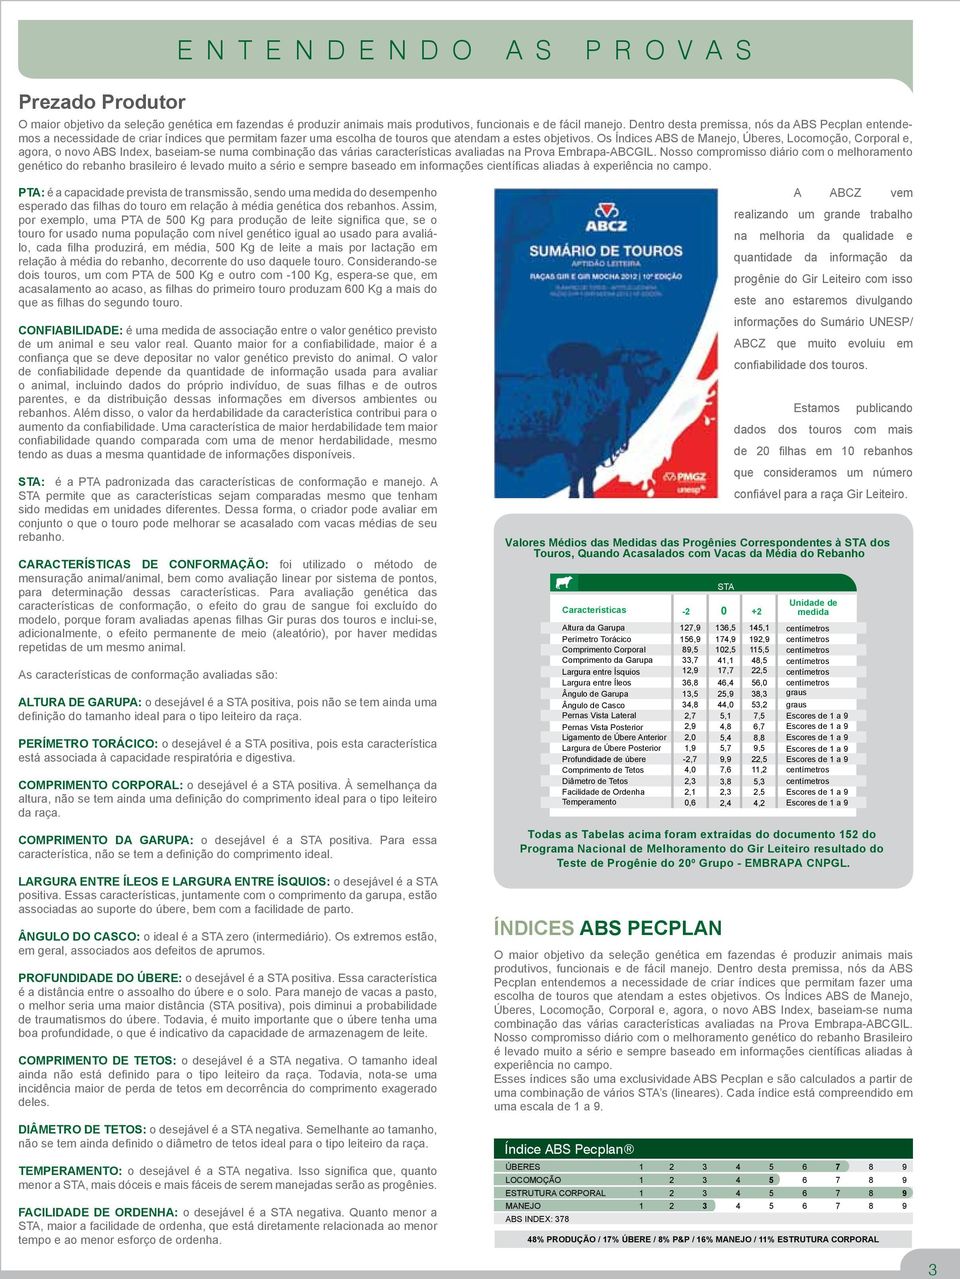 Os Índices ABS de Manejo, Úberes, Locomoção, Corporal e, agora, o novo ABS Index, baseiam-se numa combinação das várias características avaliadas na Prova Embrapa-ABCGIL.